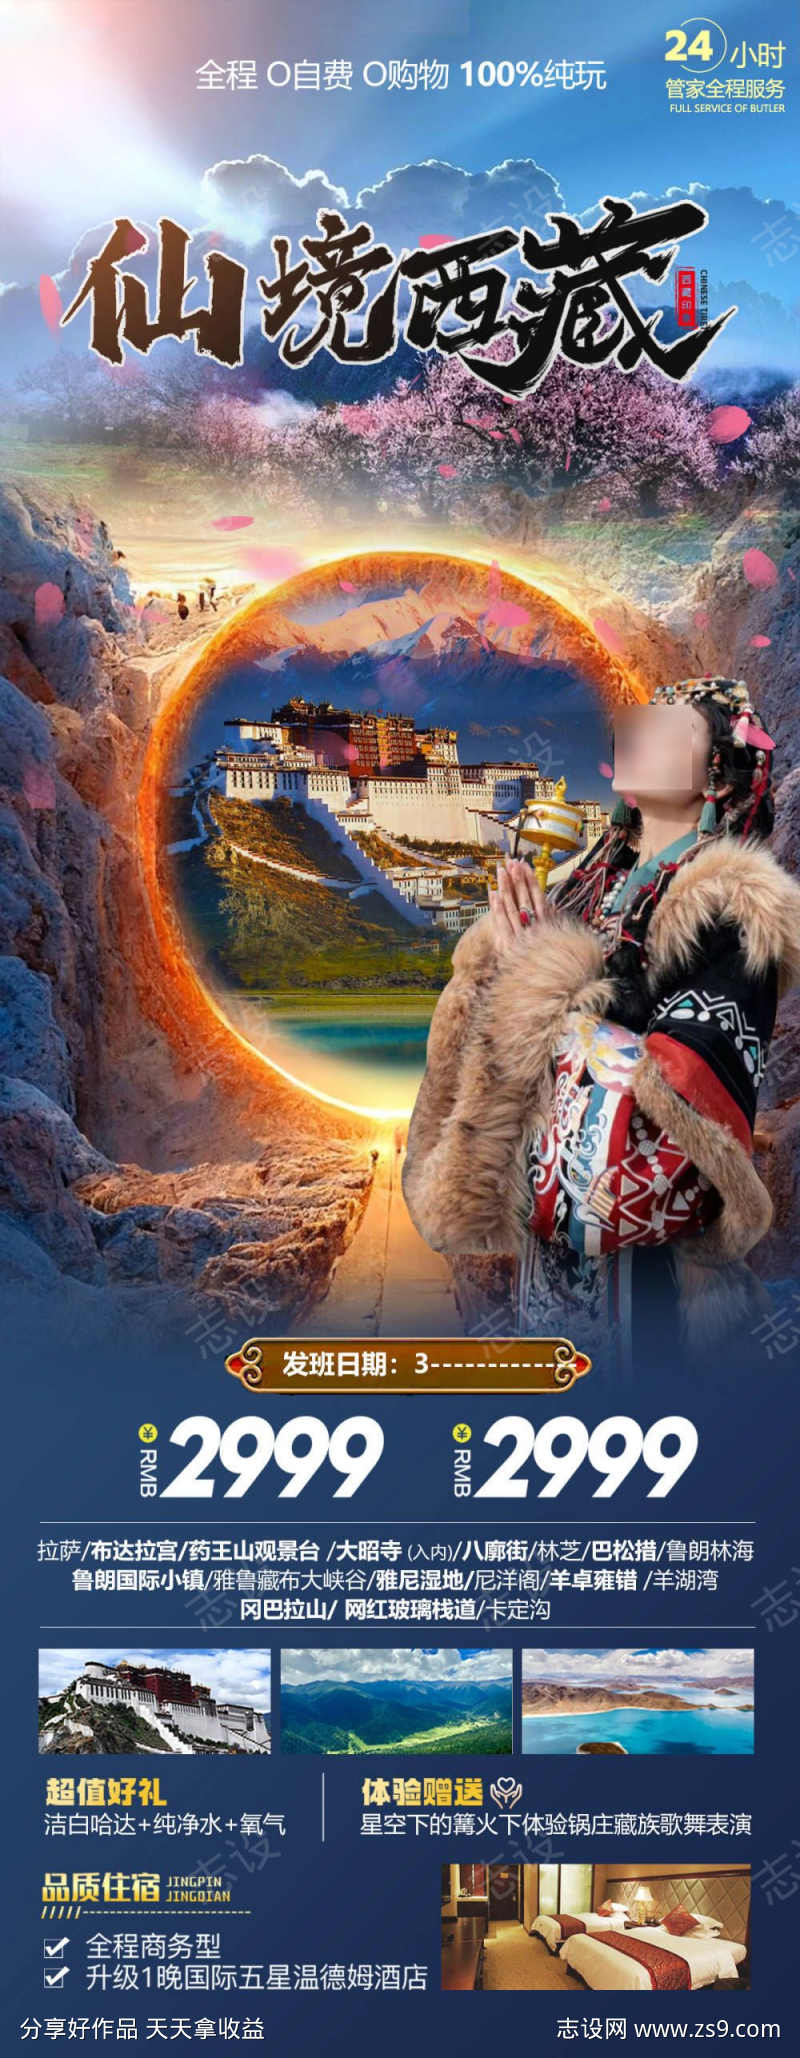 仙境西藏旅游